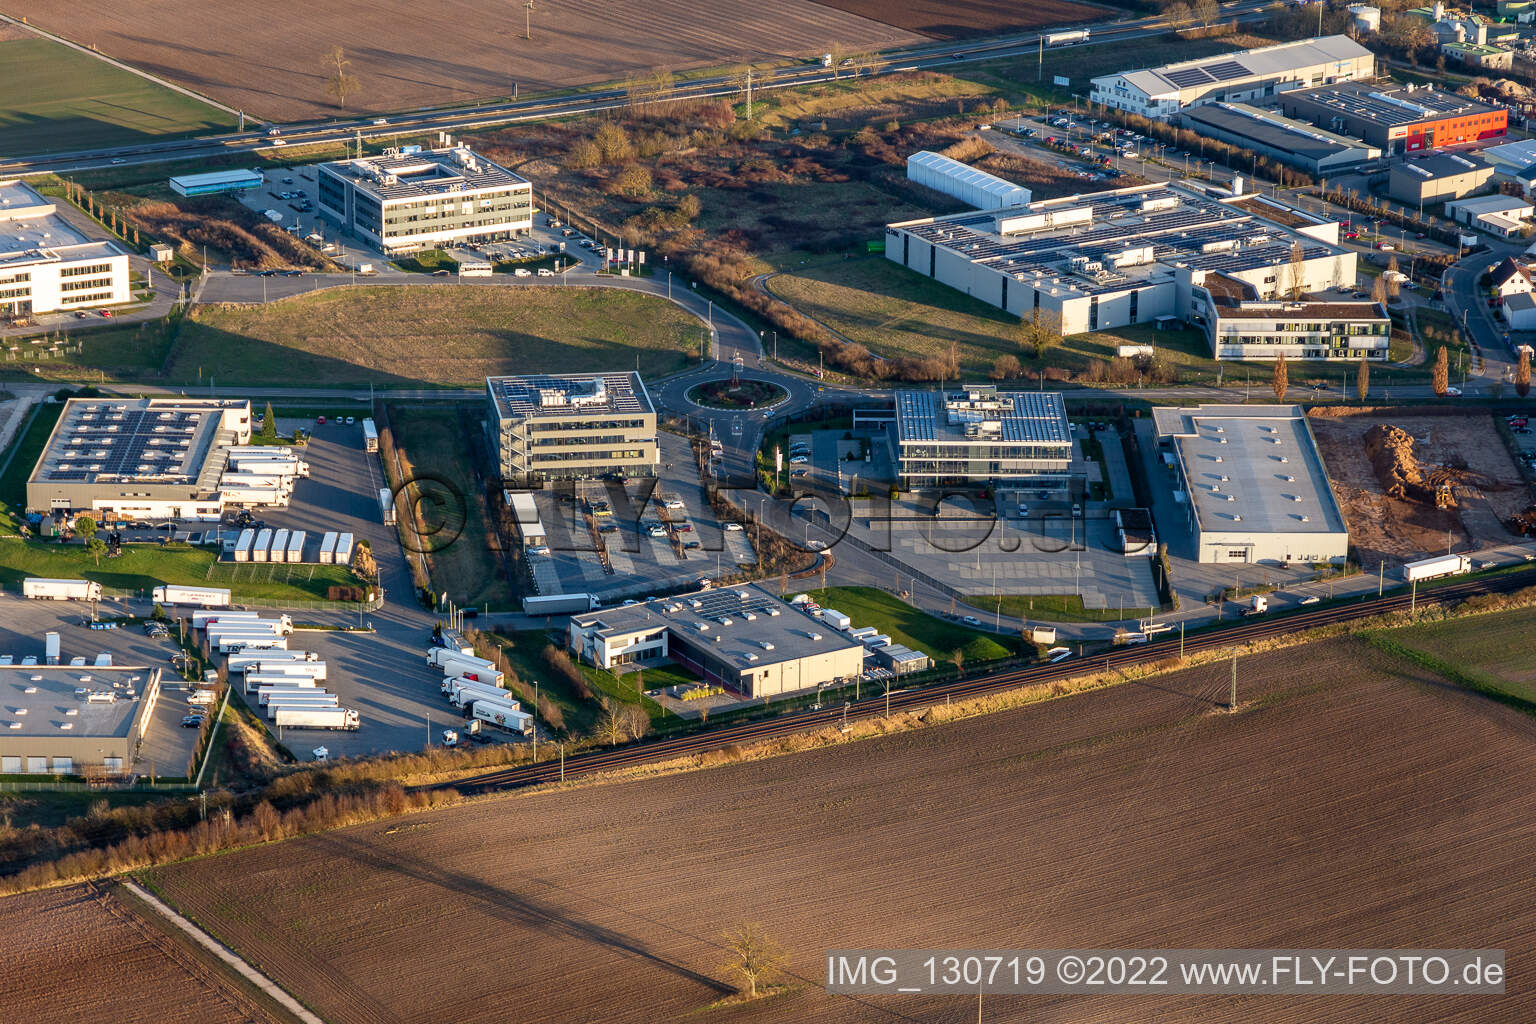 Vue aérienne de ITK Engineering GmbH, Kardex Software GmbH, Groupe MTS à Rülzheim dans le département Rhénanie-Palatinat, Allemagne